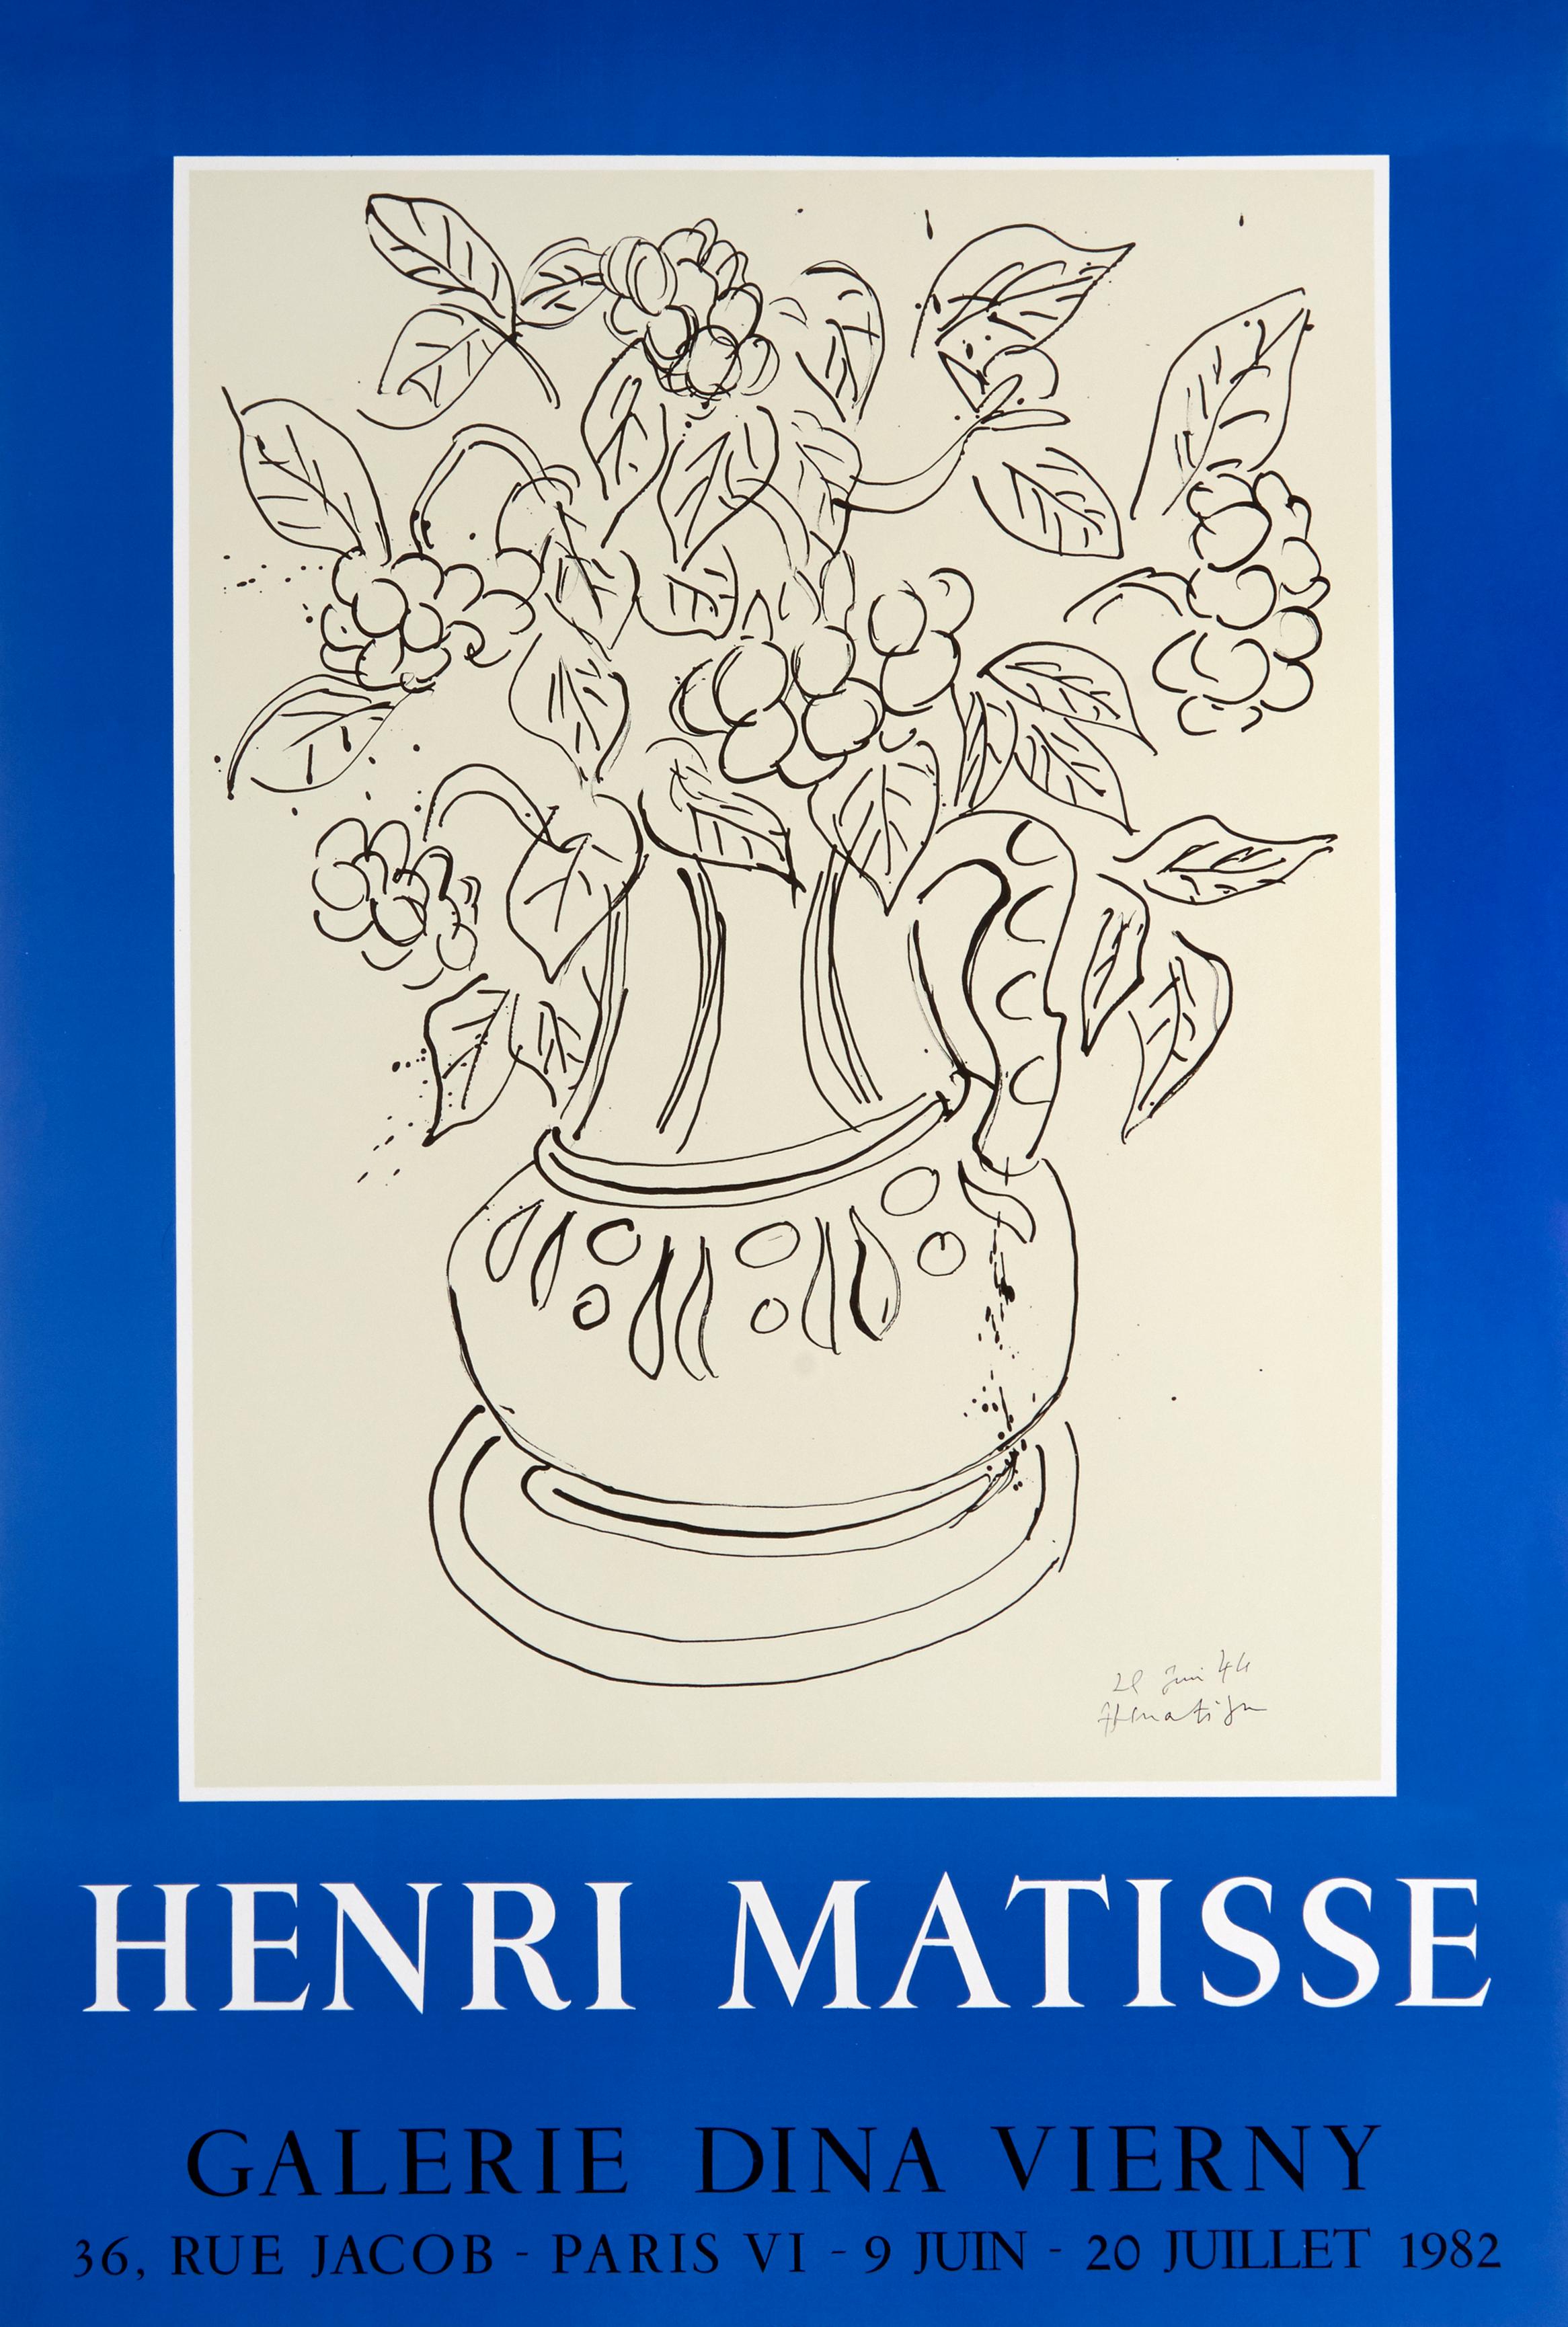 (after) Henri Matisse Print – Lithographieplakat der Galerie Dina Vierny von Henri Matisse